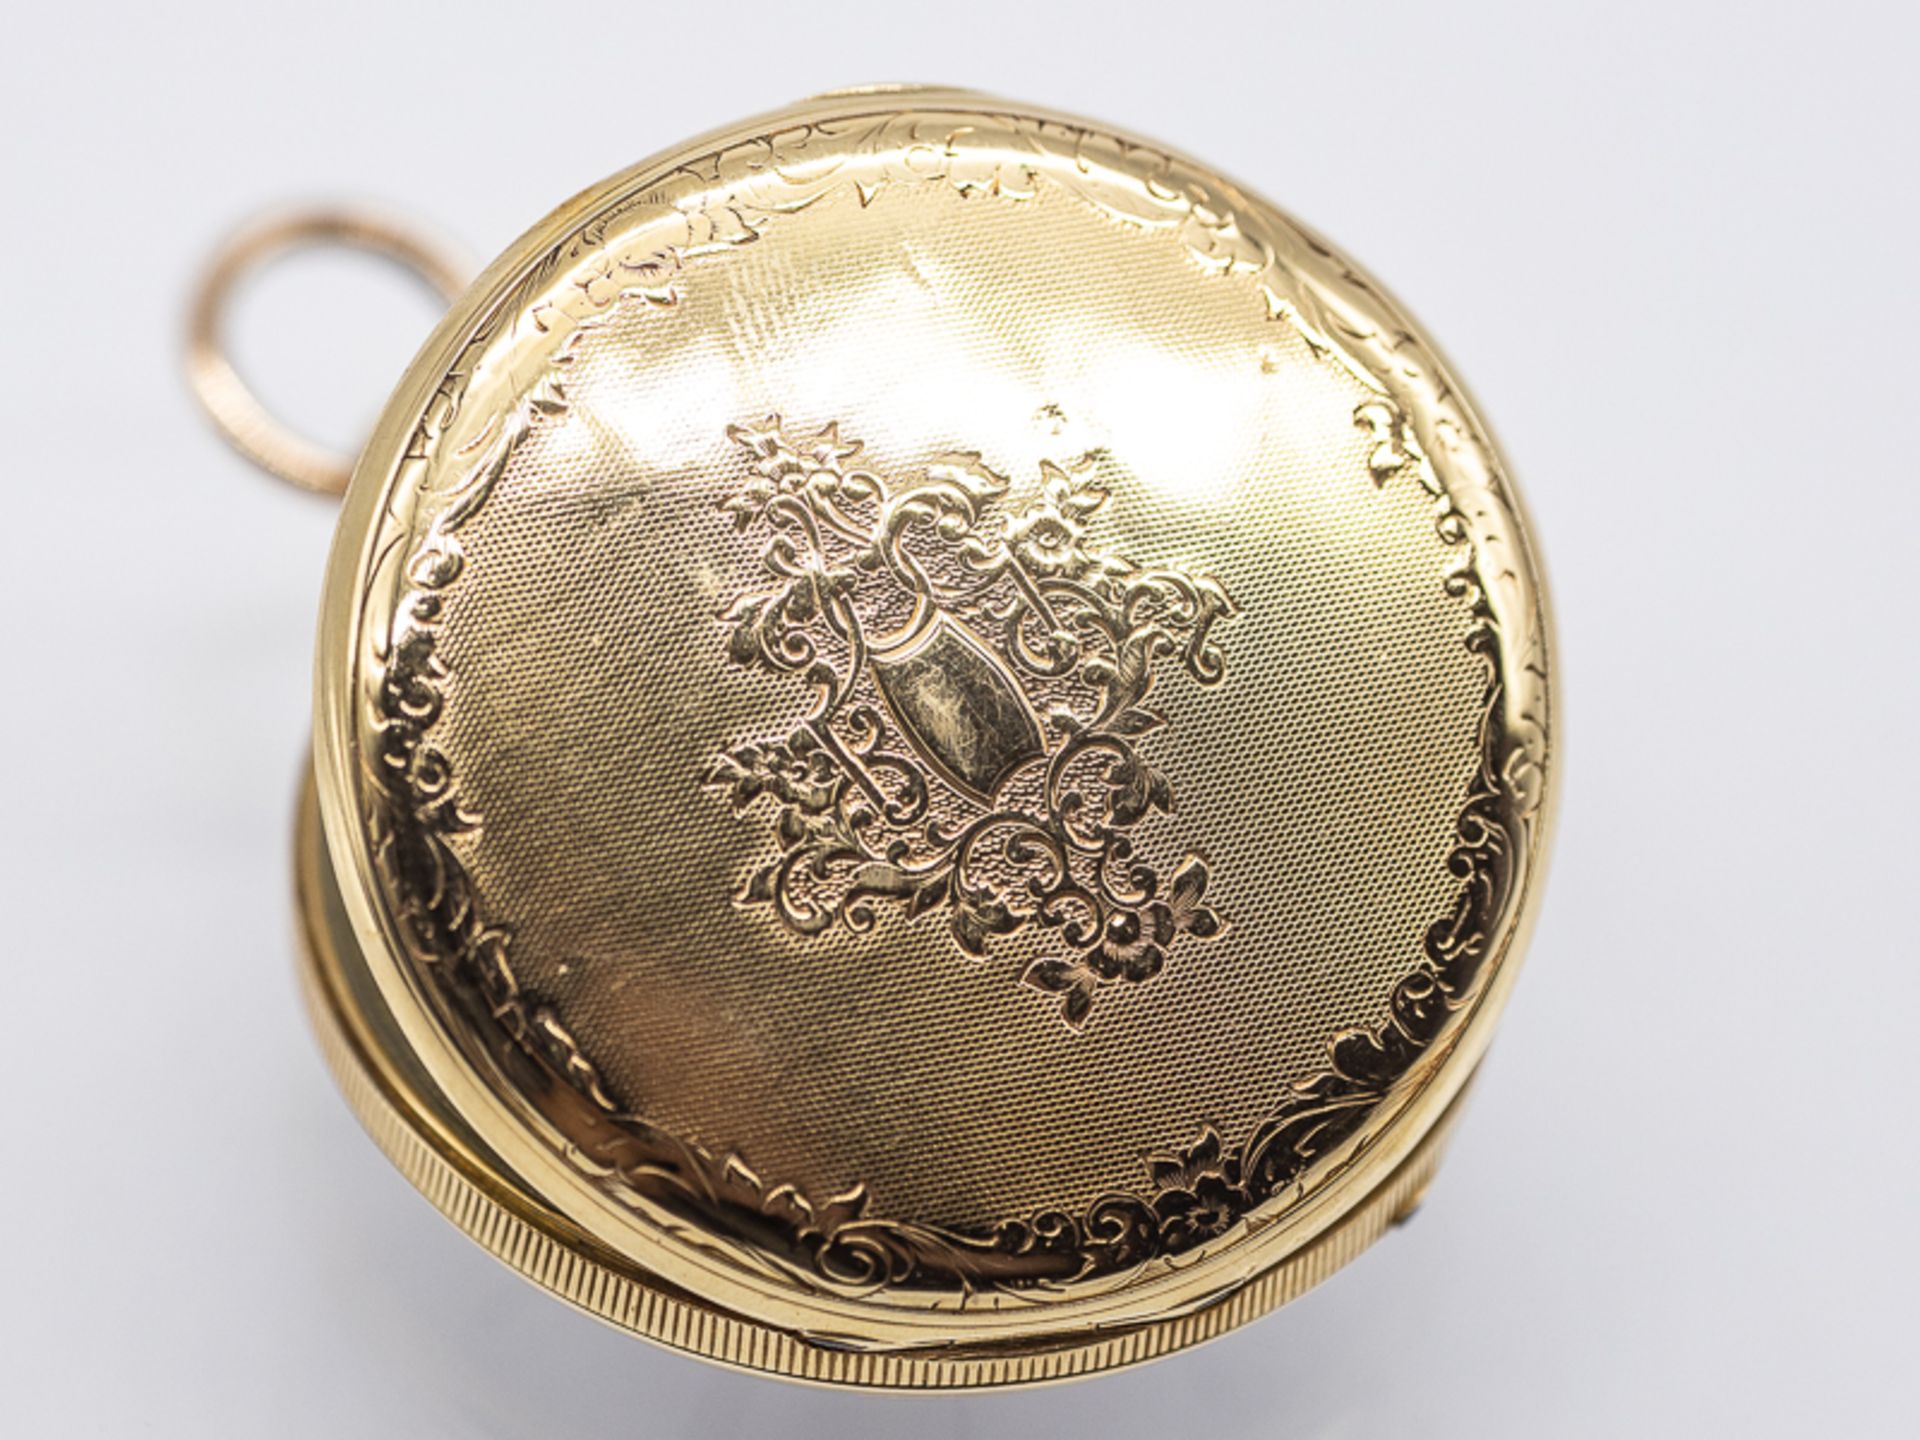 Taschenuhr, sogenannte Schlüsseluhr, 1. Hälfte 19. Jh. Gold und Metall. Gesamtgewicht ca. 49 g.